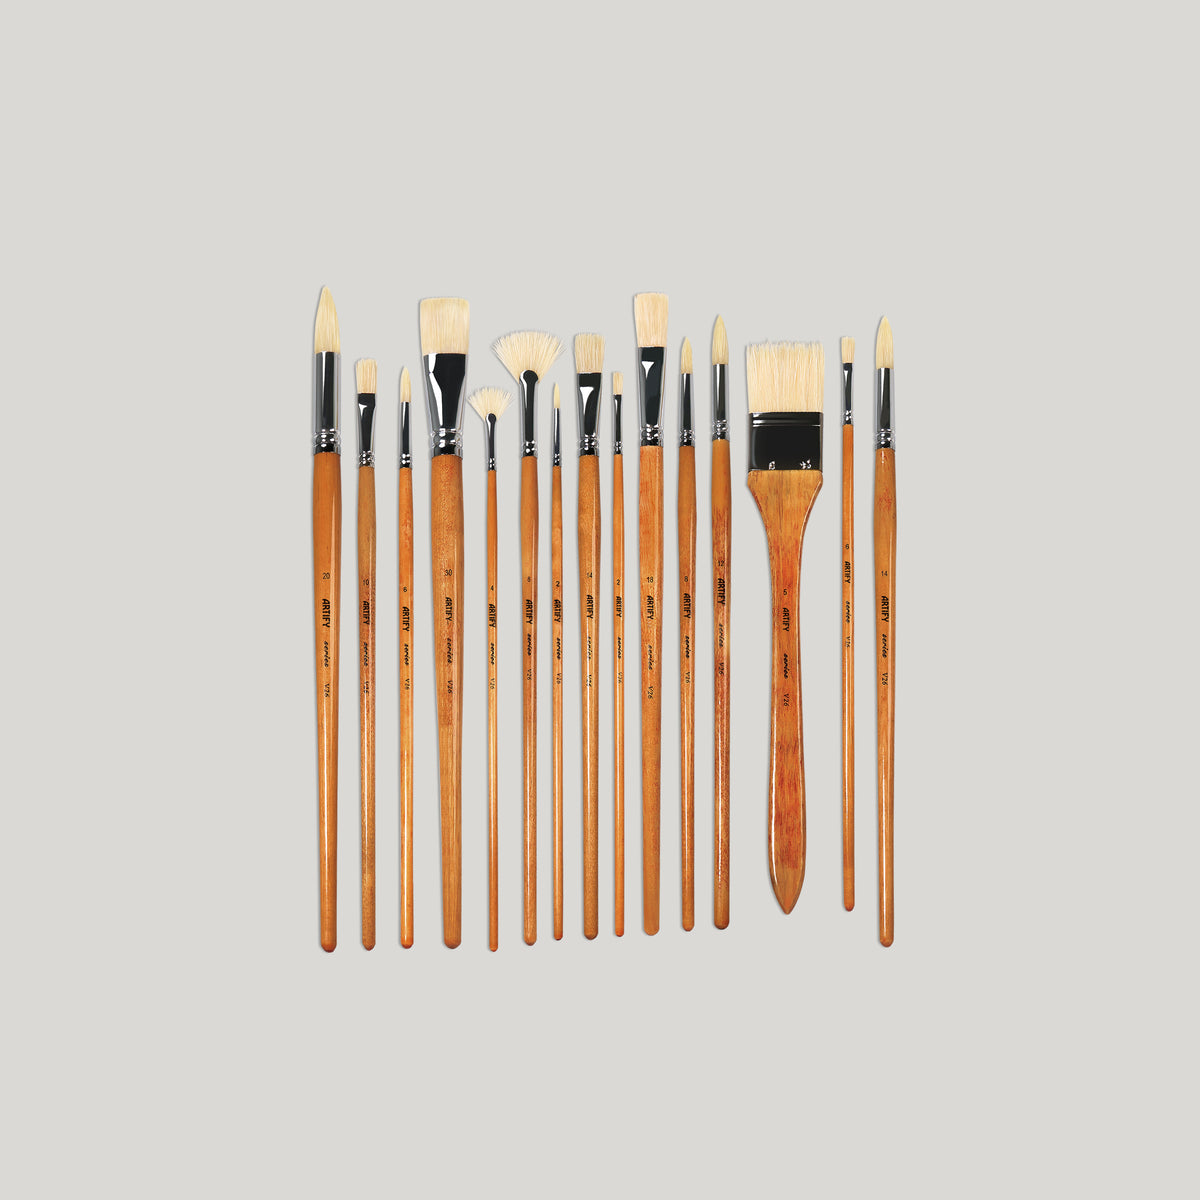 A-detail Paint Brush Set,15pcs Miniature Painting Brushes Kit